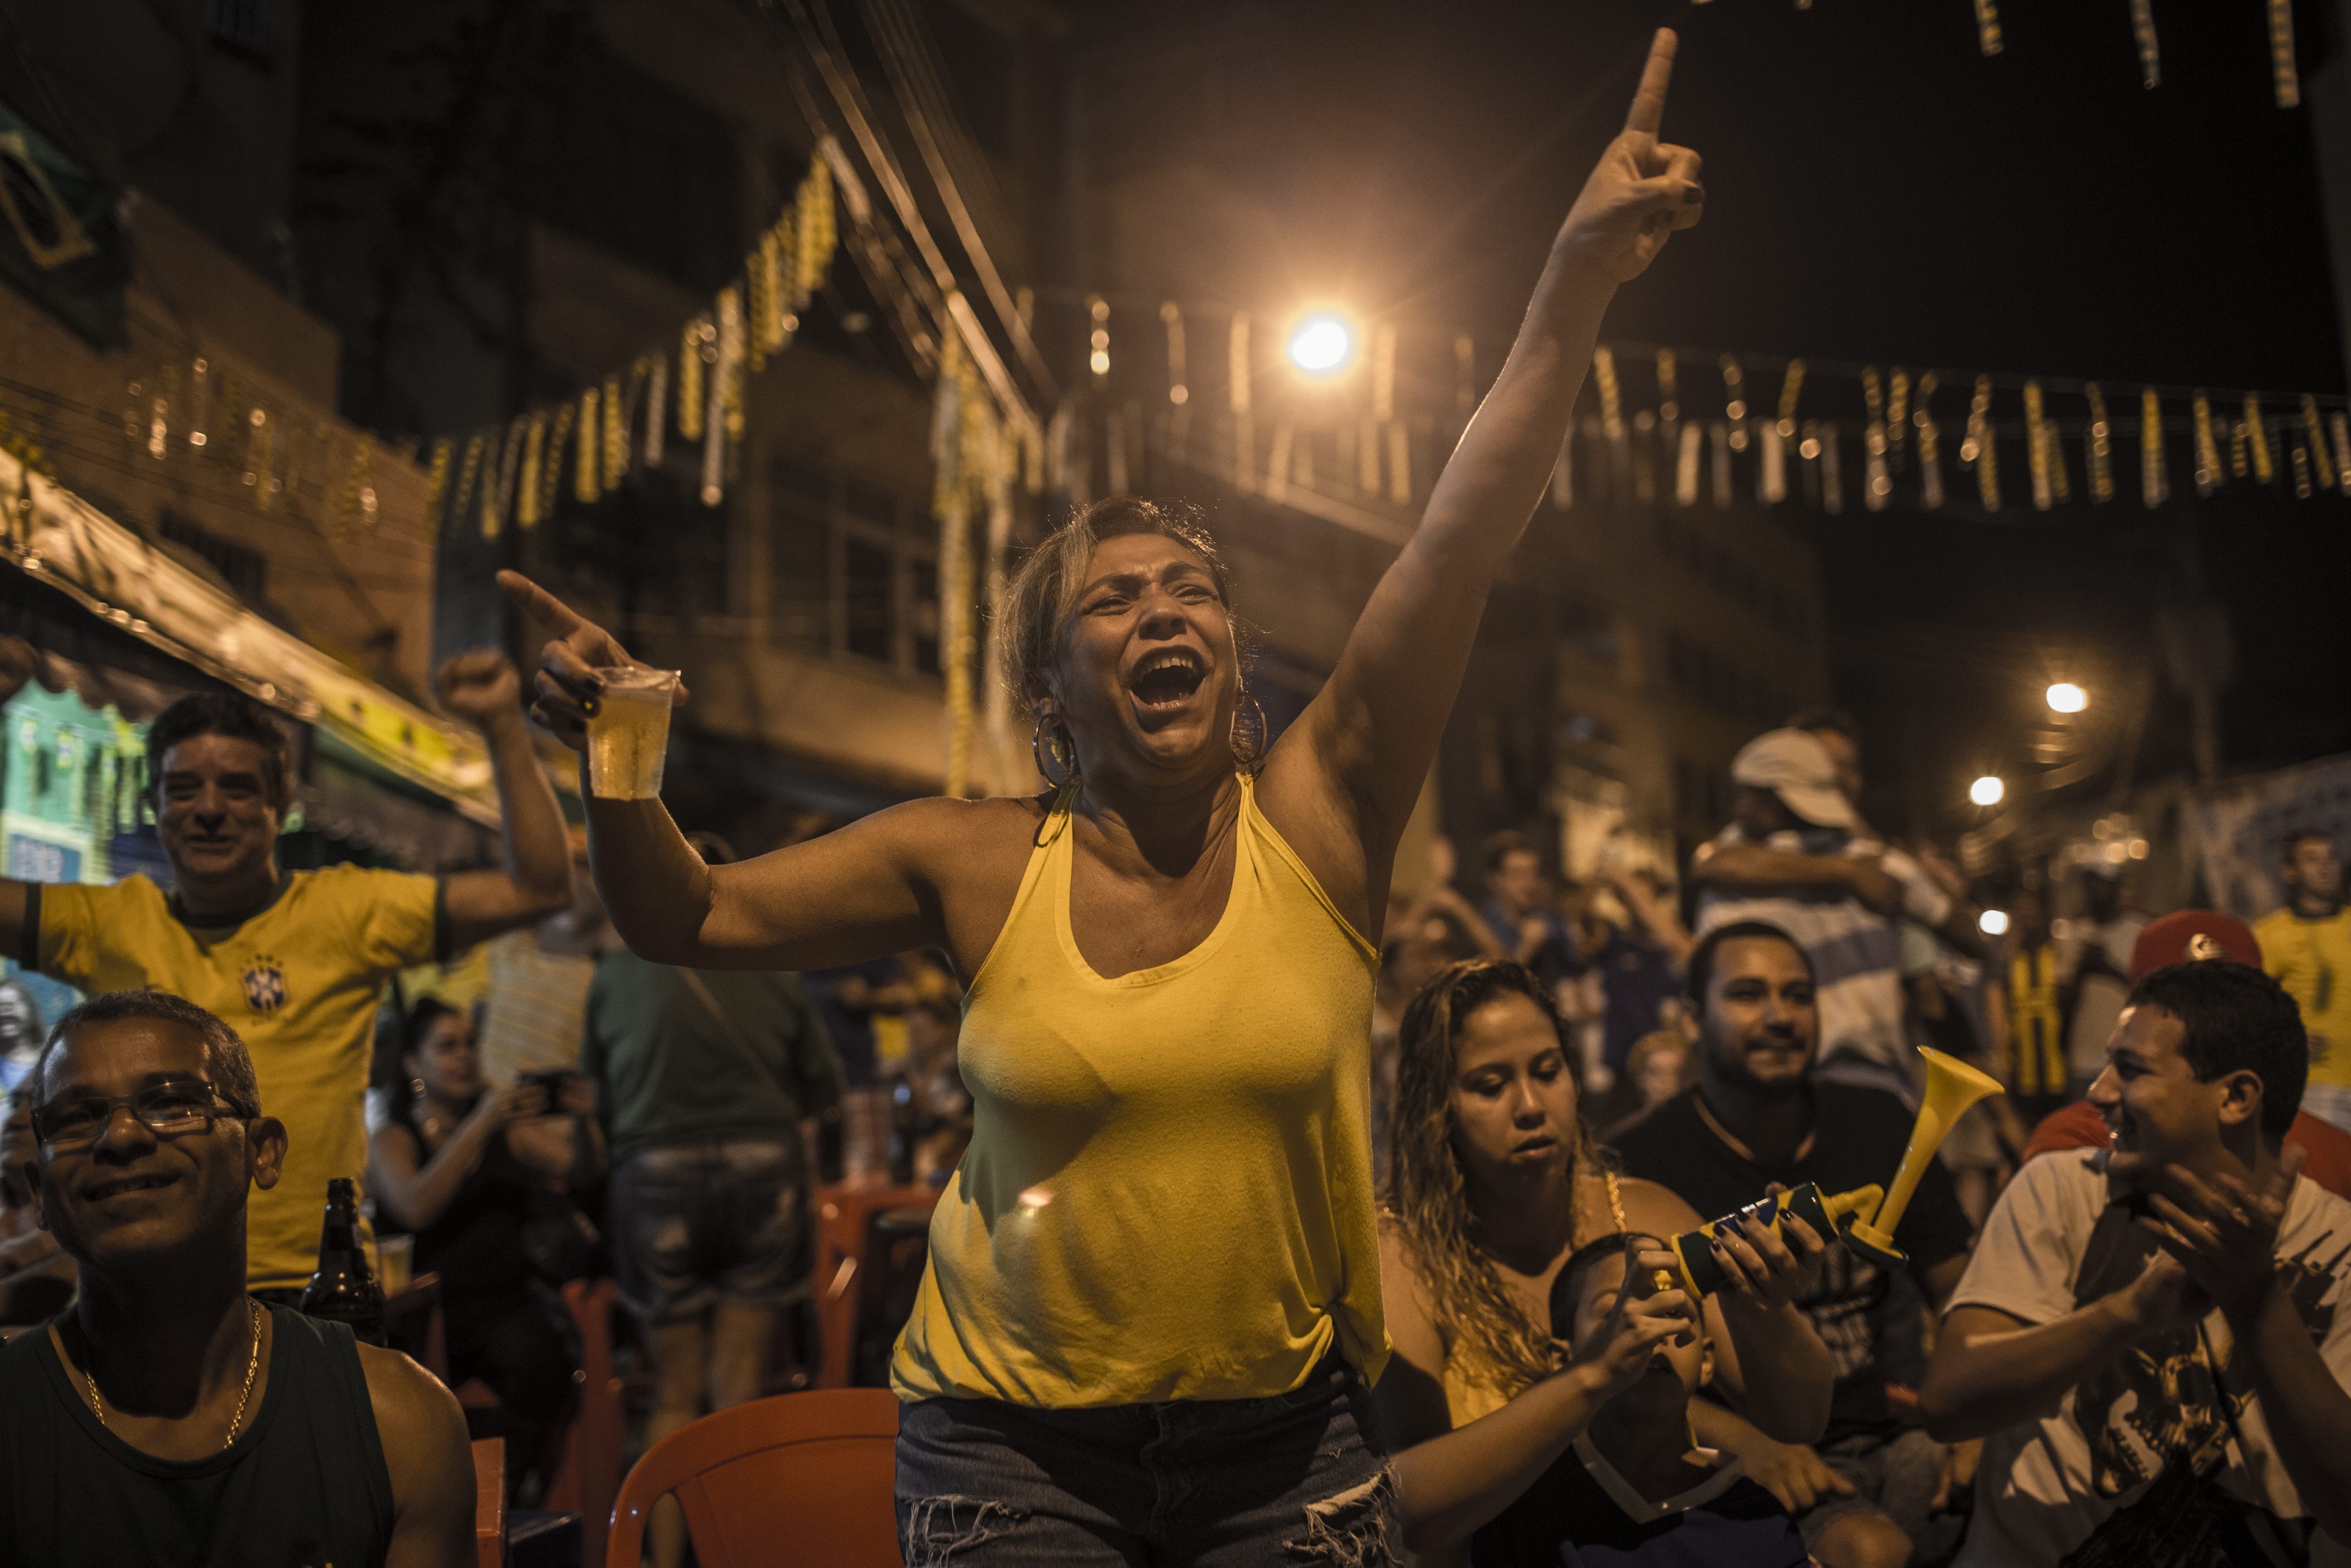 Μουντιάλ 2014: Φόβοι για εξέγερση αν χάσει η Βραζιλία το Κύπελλο